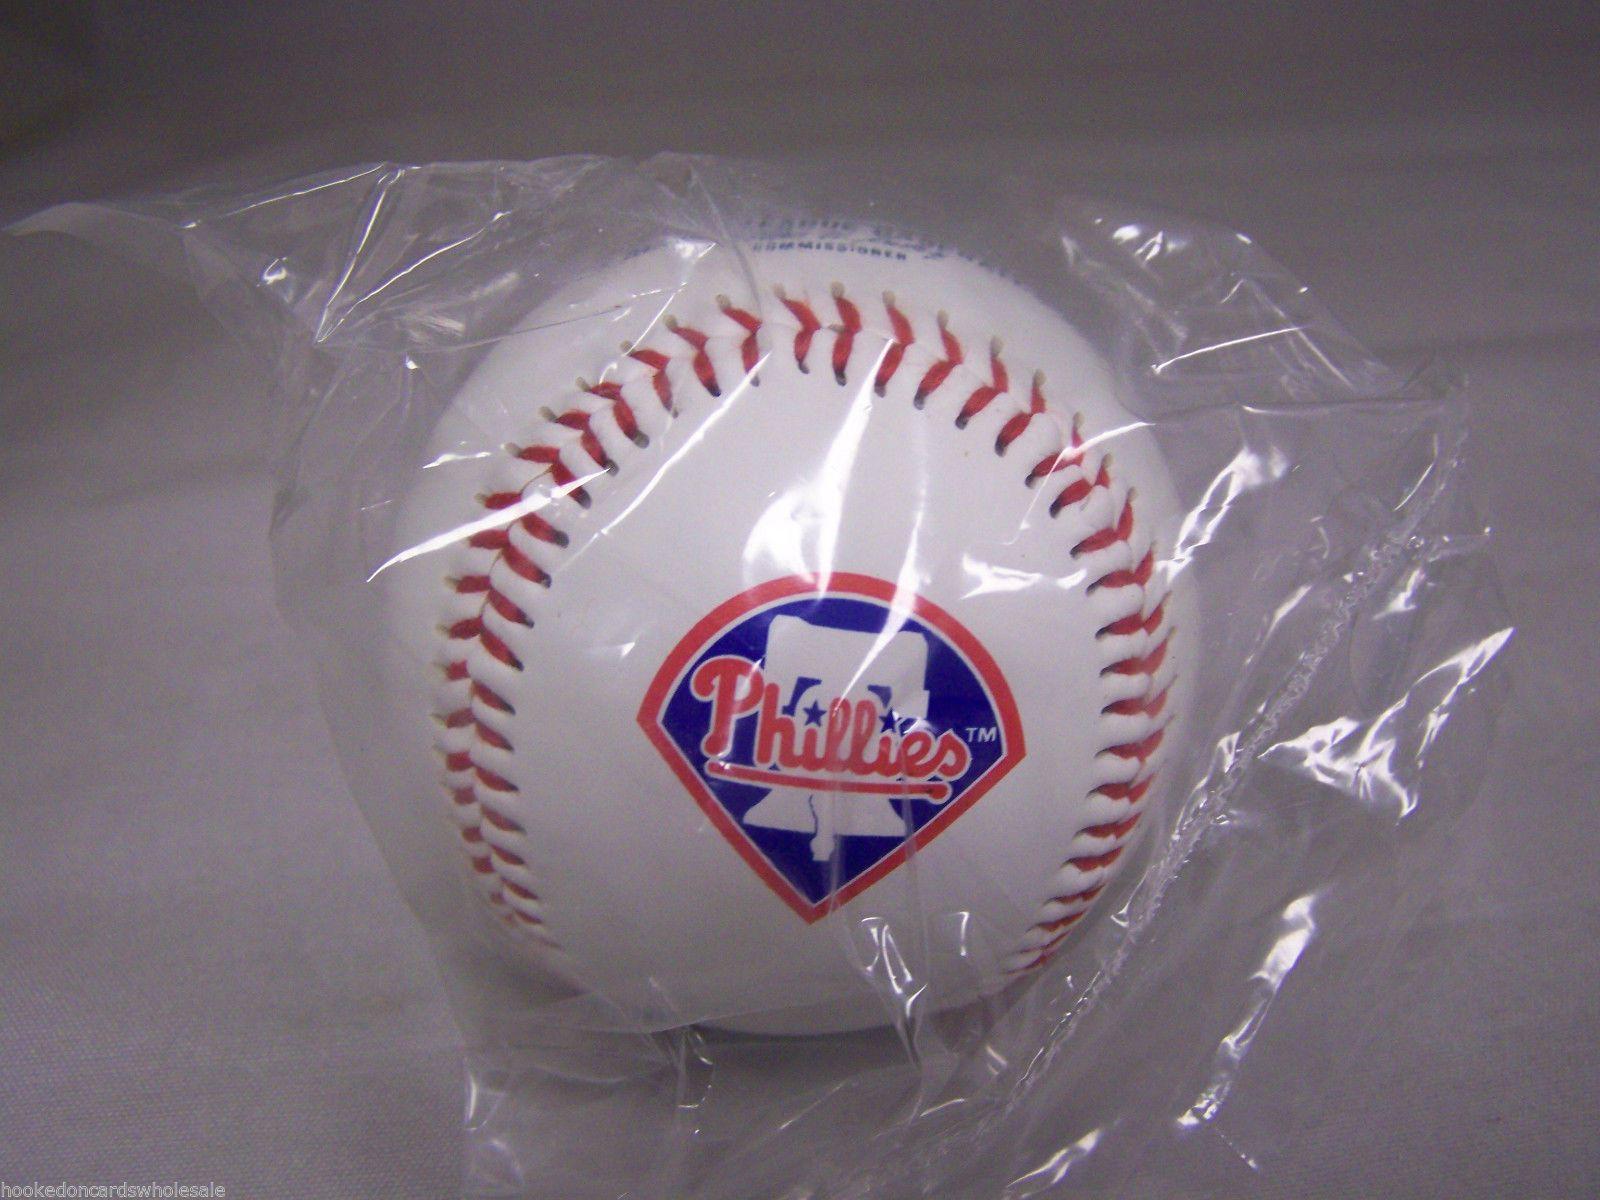 Philadelphia Phillies Team Logo - Philadelphia Phillies Team Logo Ball MLB Baseball Rawlings